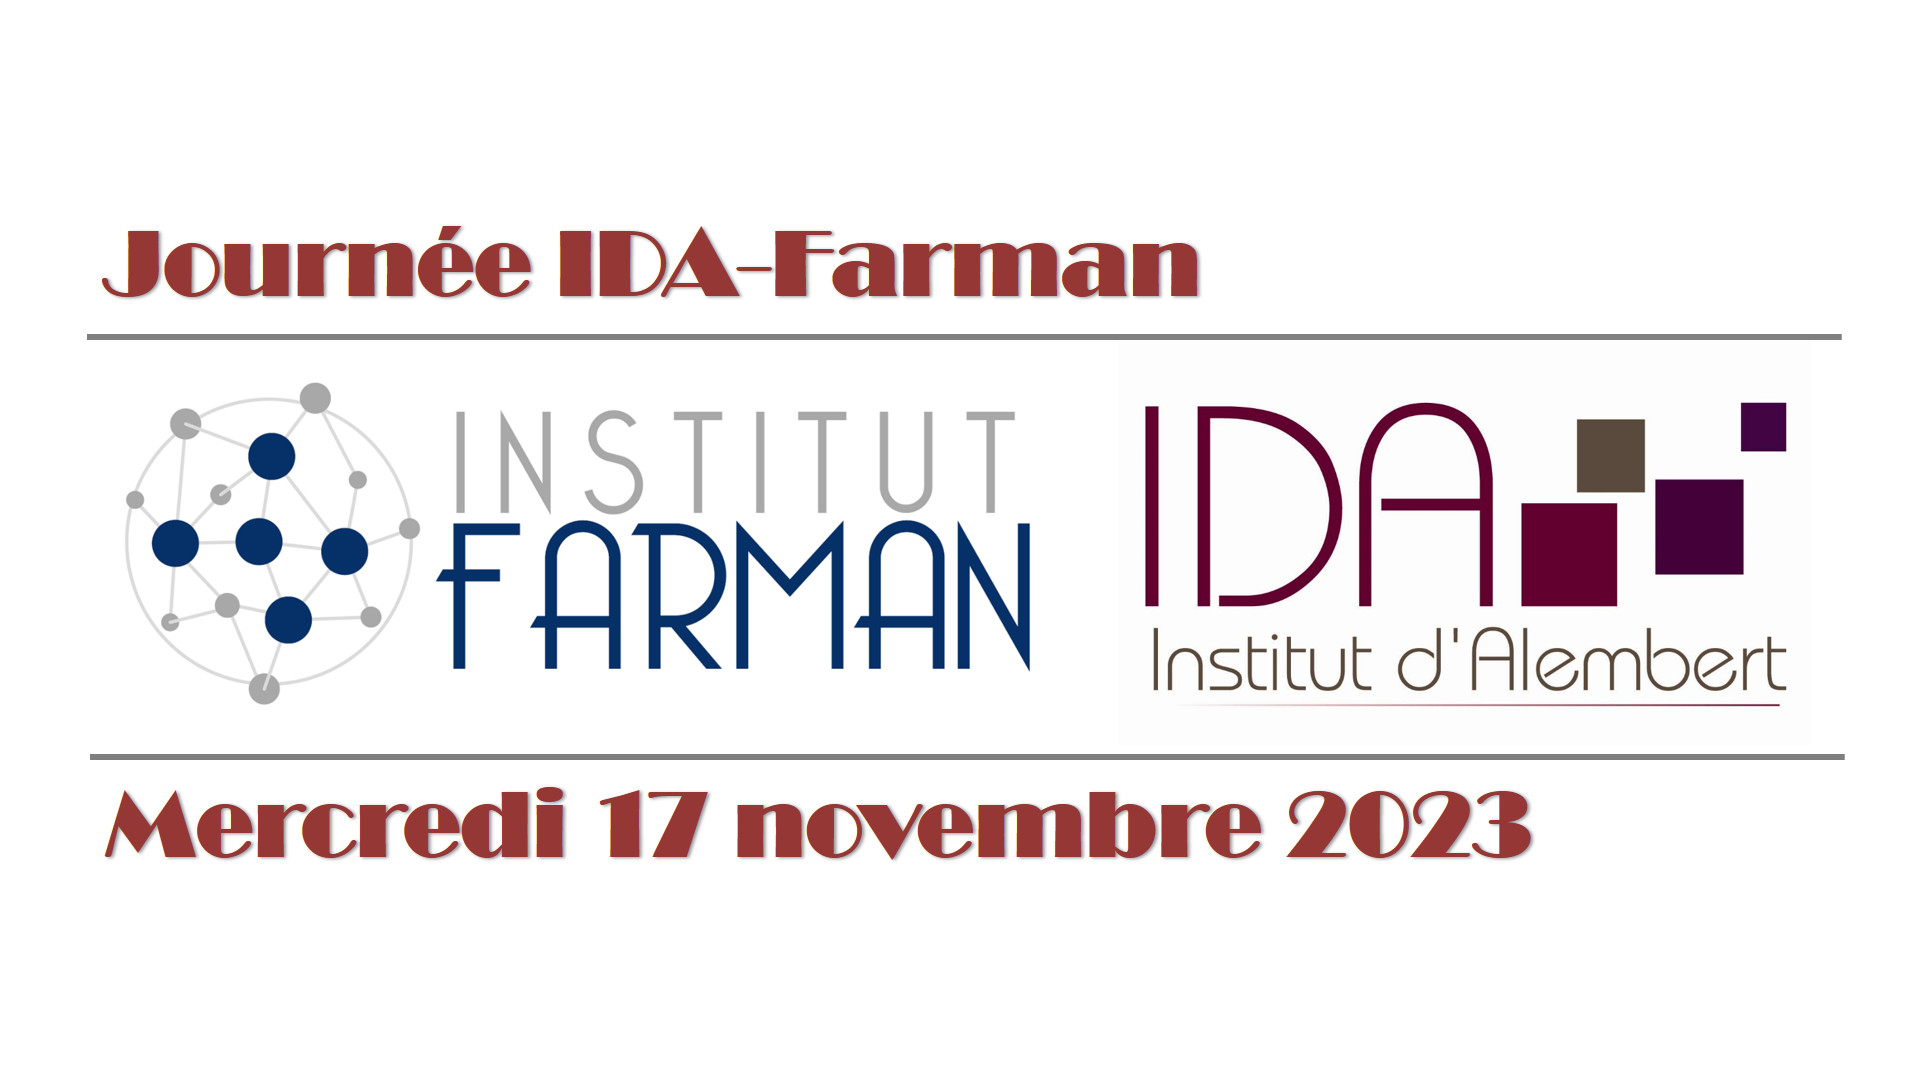 Joune Farman-IDA, novembre 2023